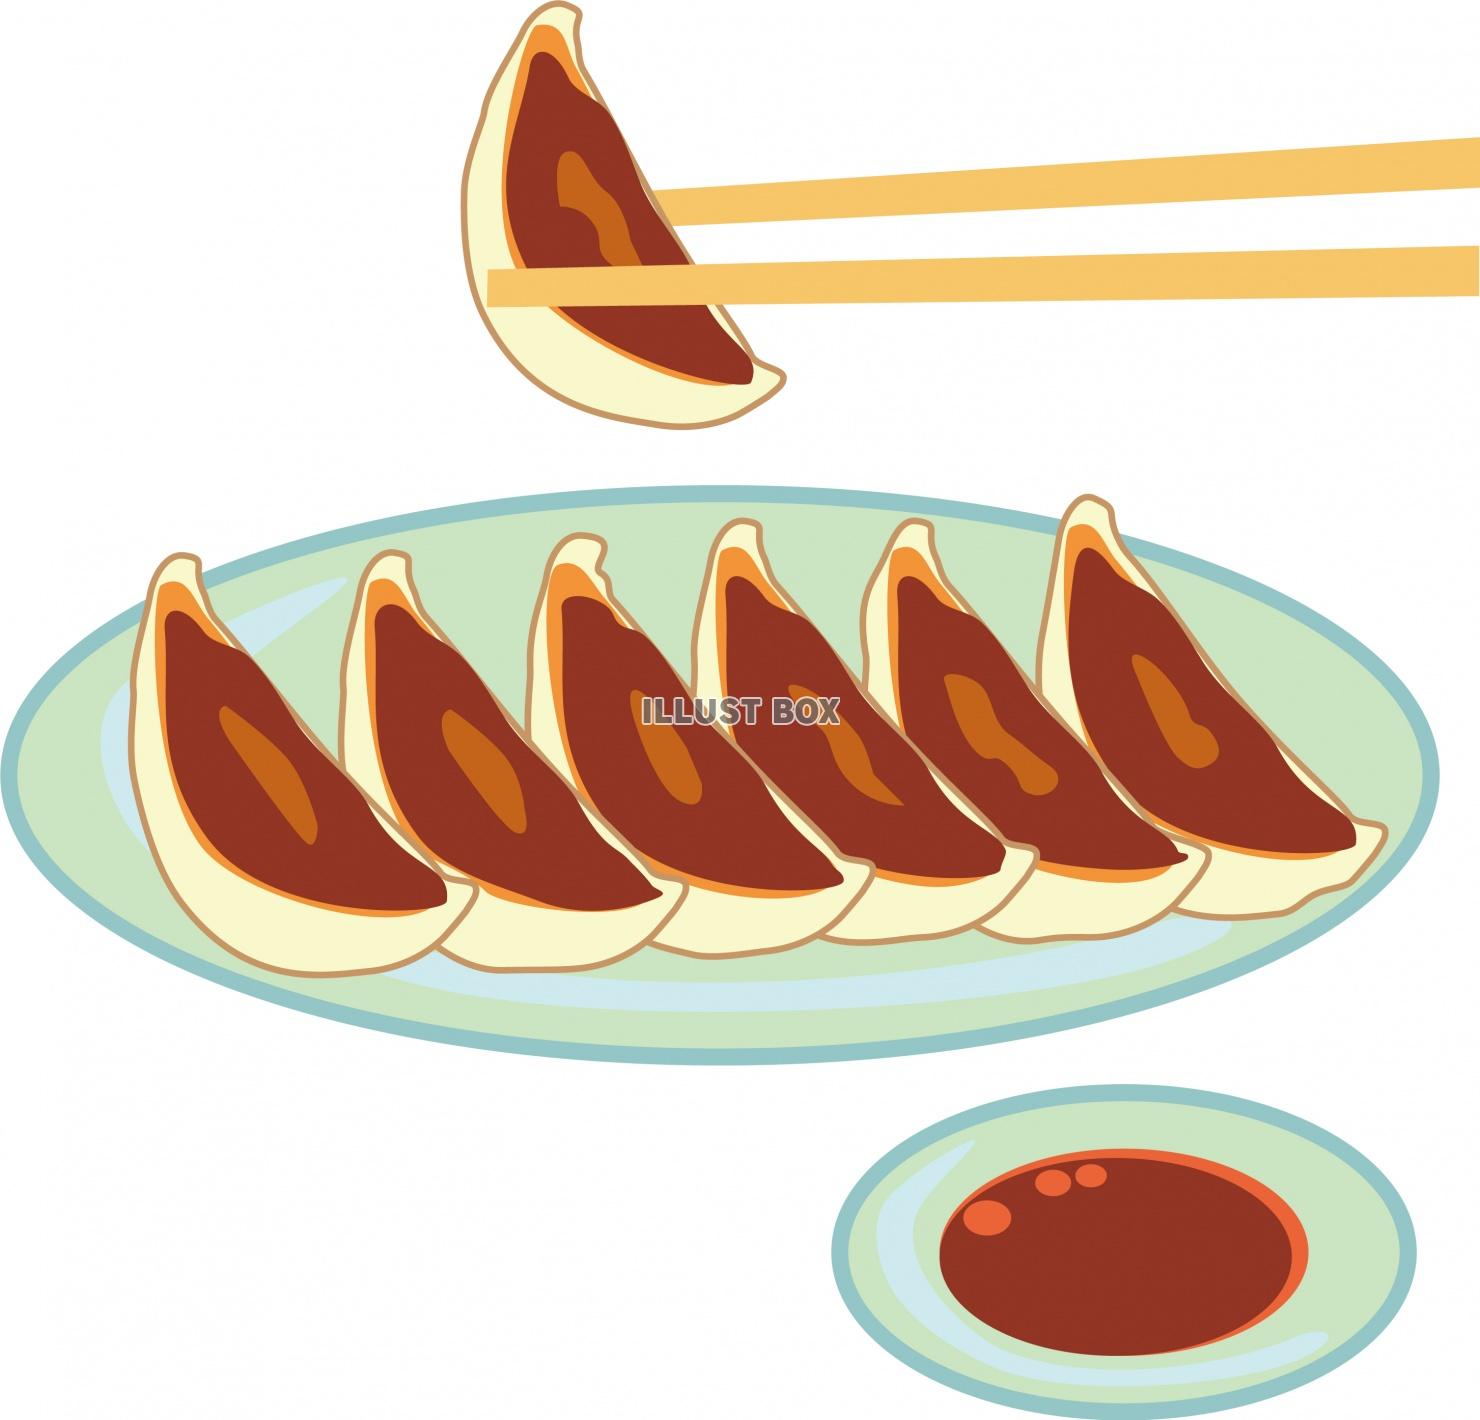 無料イラスト 皿にのったギョーザを箸で食べる所のイラスト